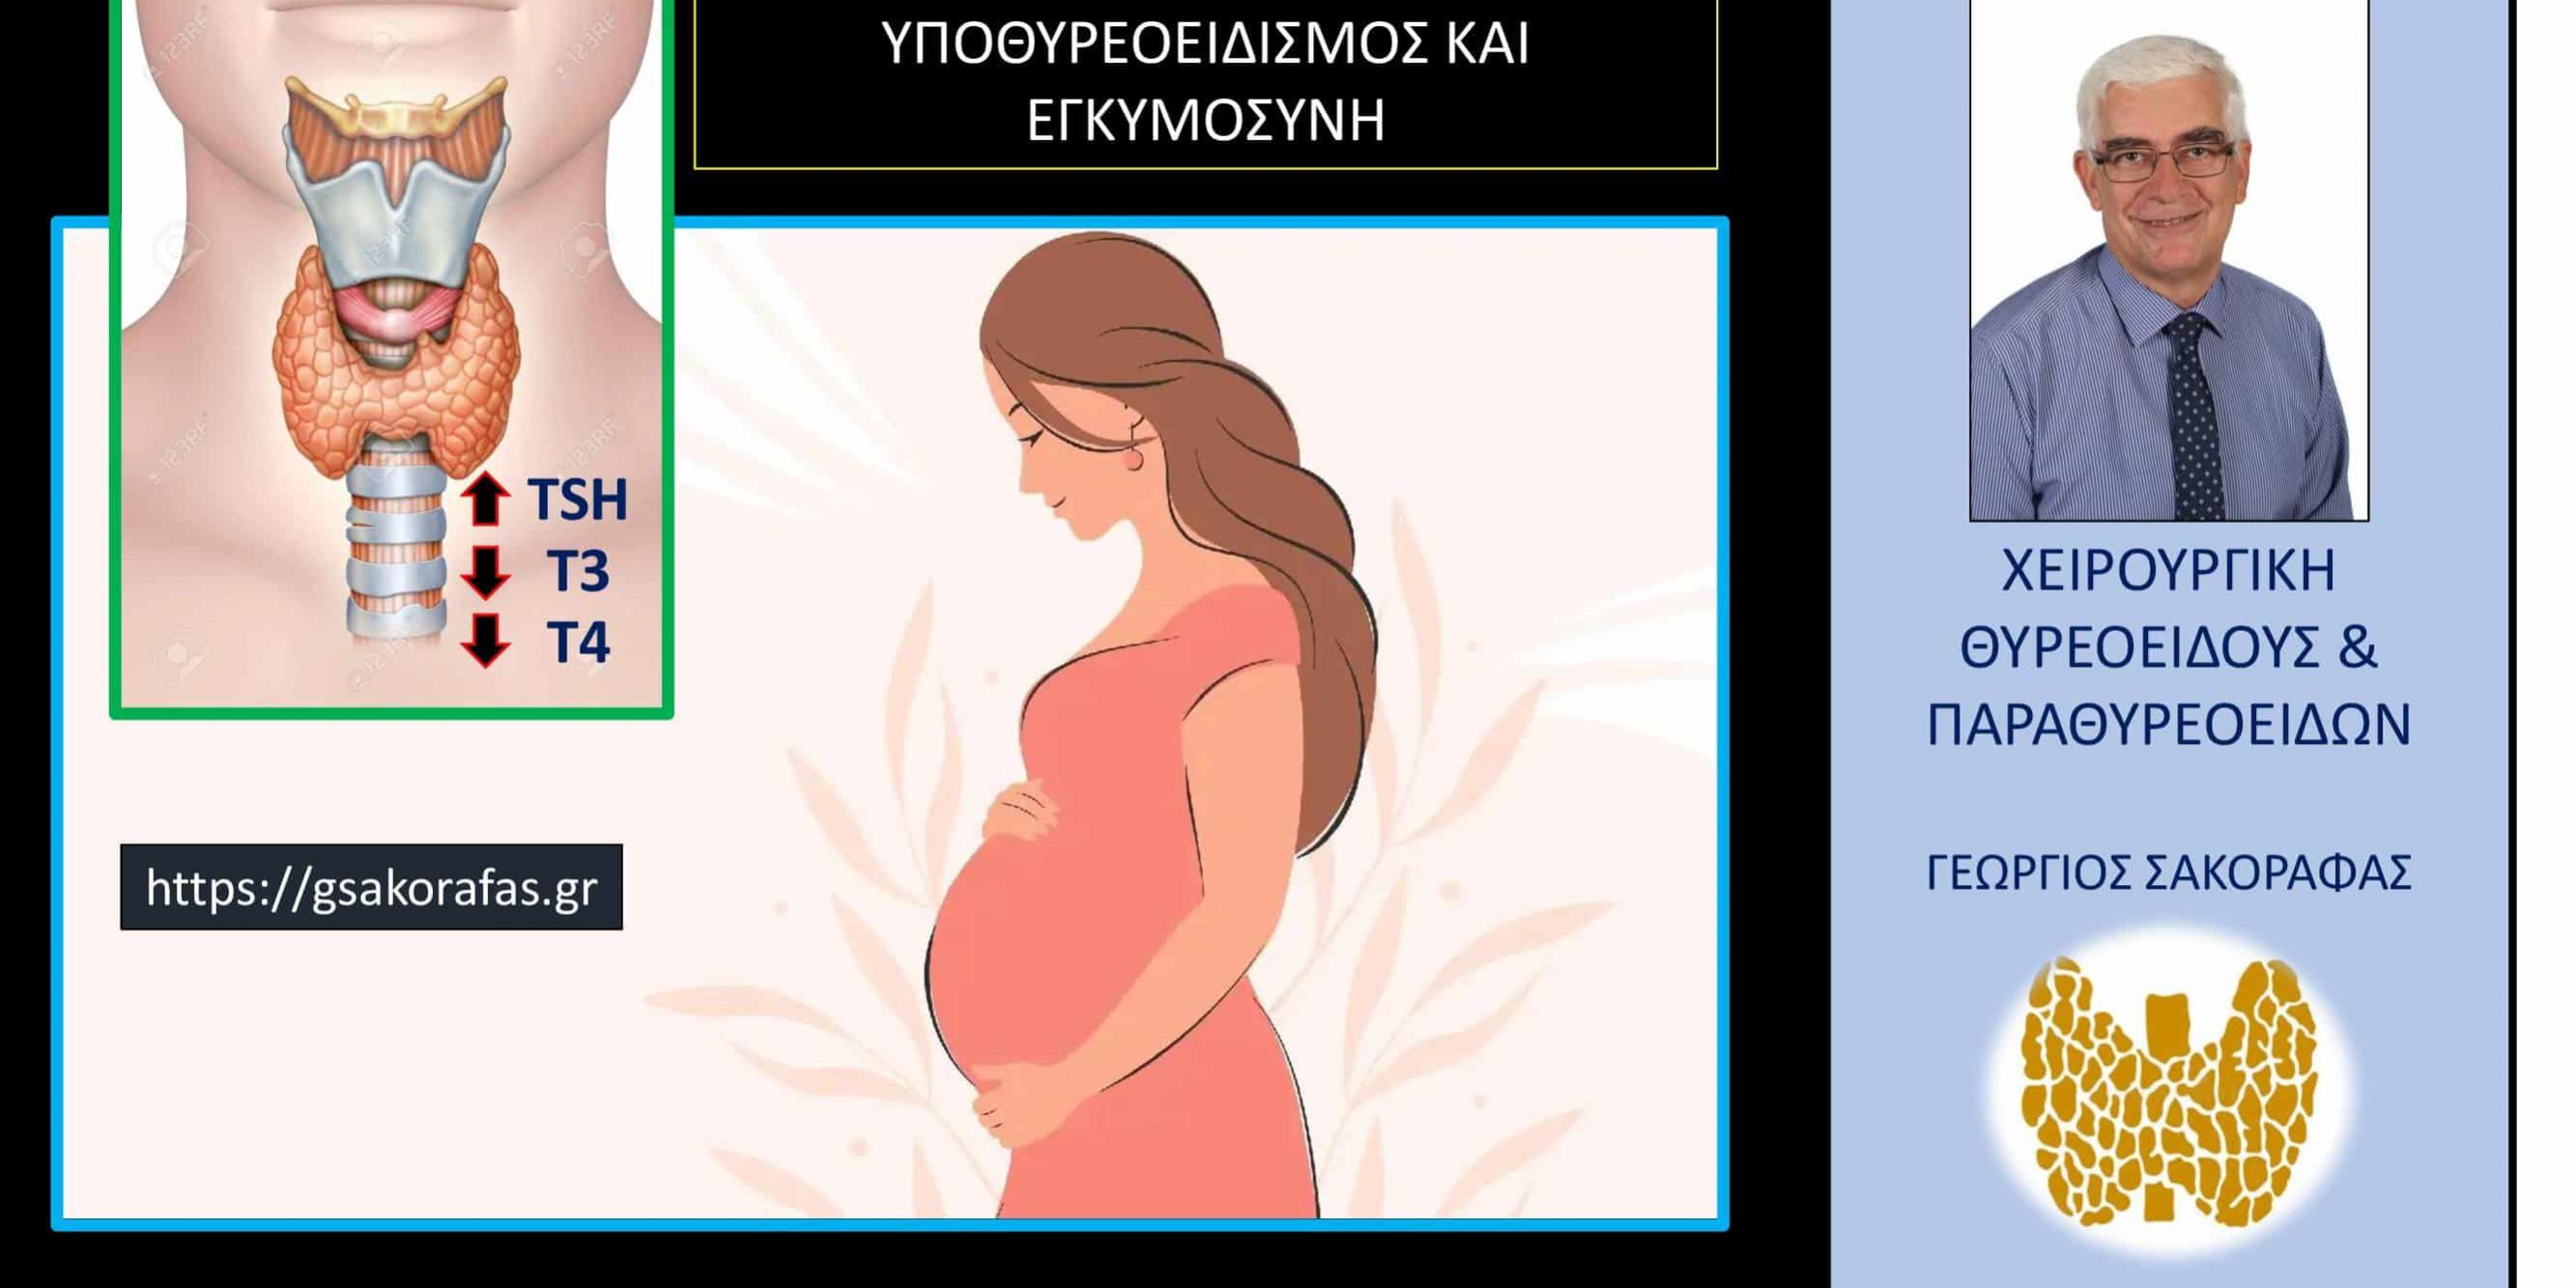 Υποθυρεοειδισμός και εγκυμοσύνη